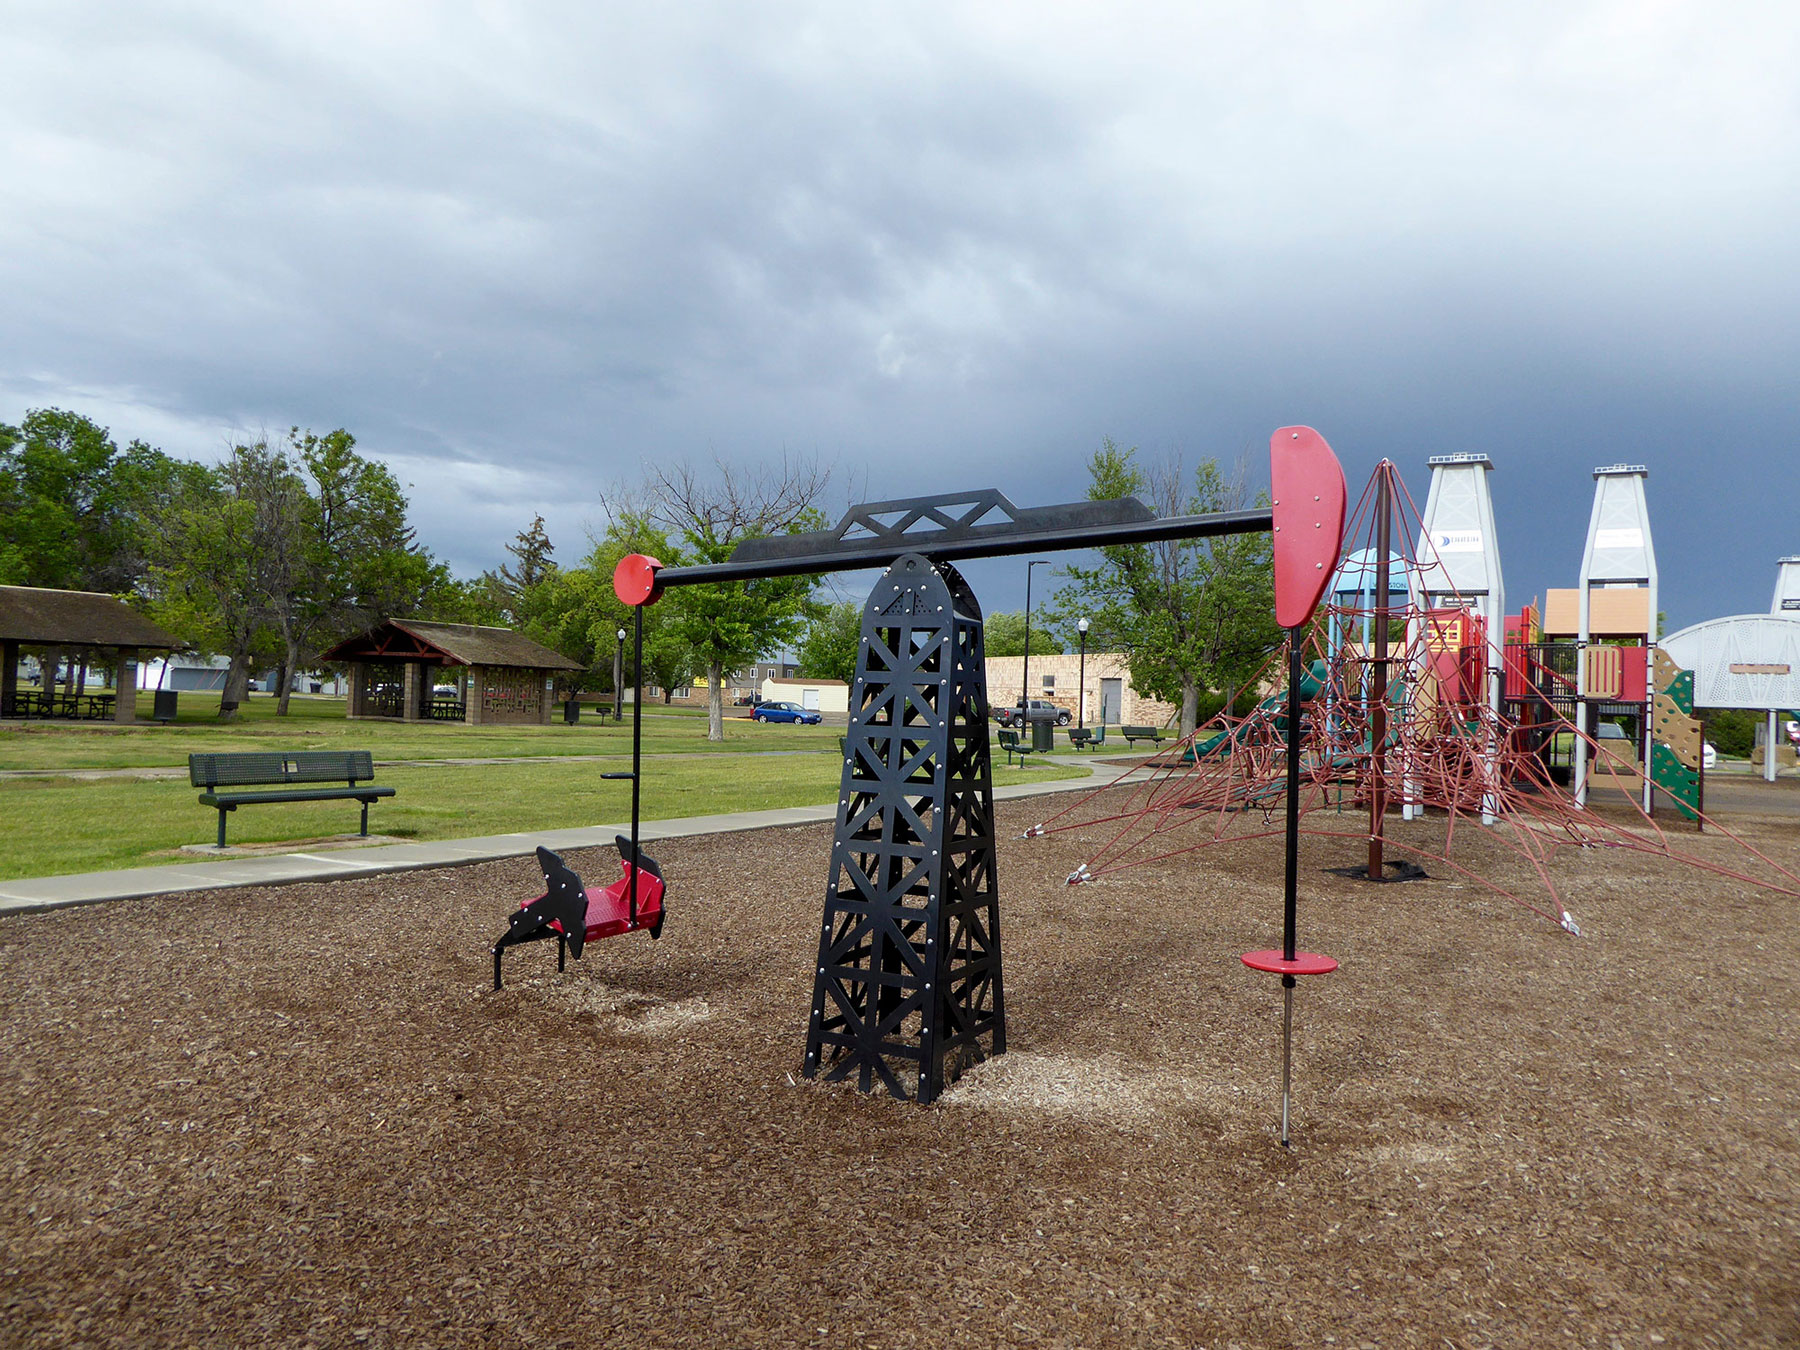  Oil-themed playground. Williston, ND 